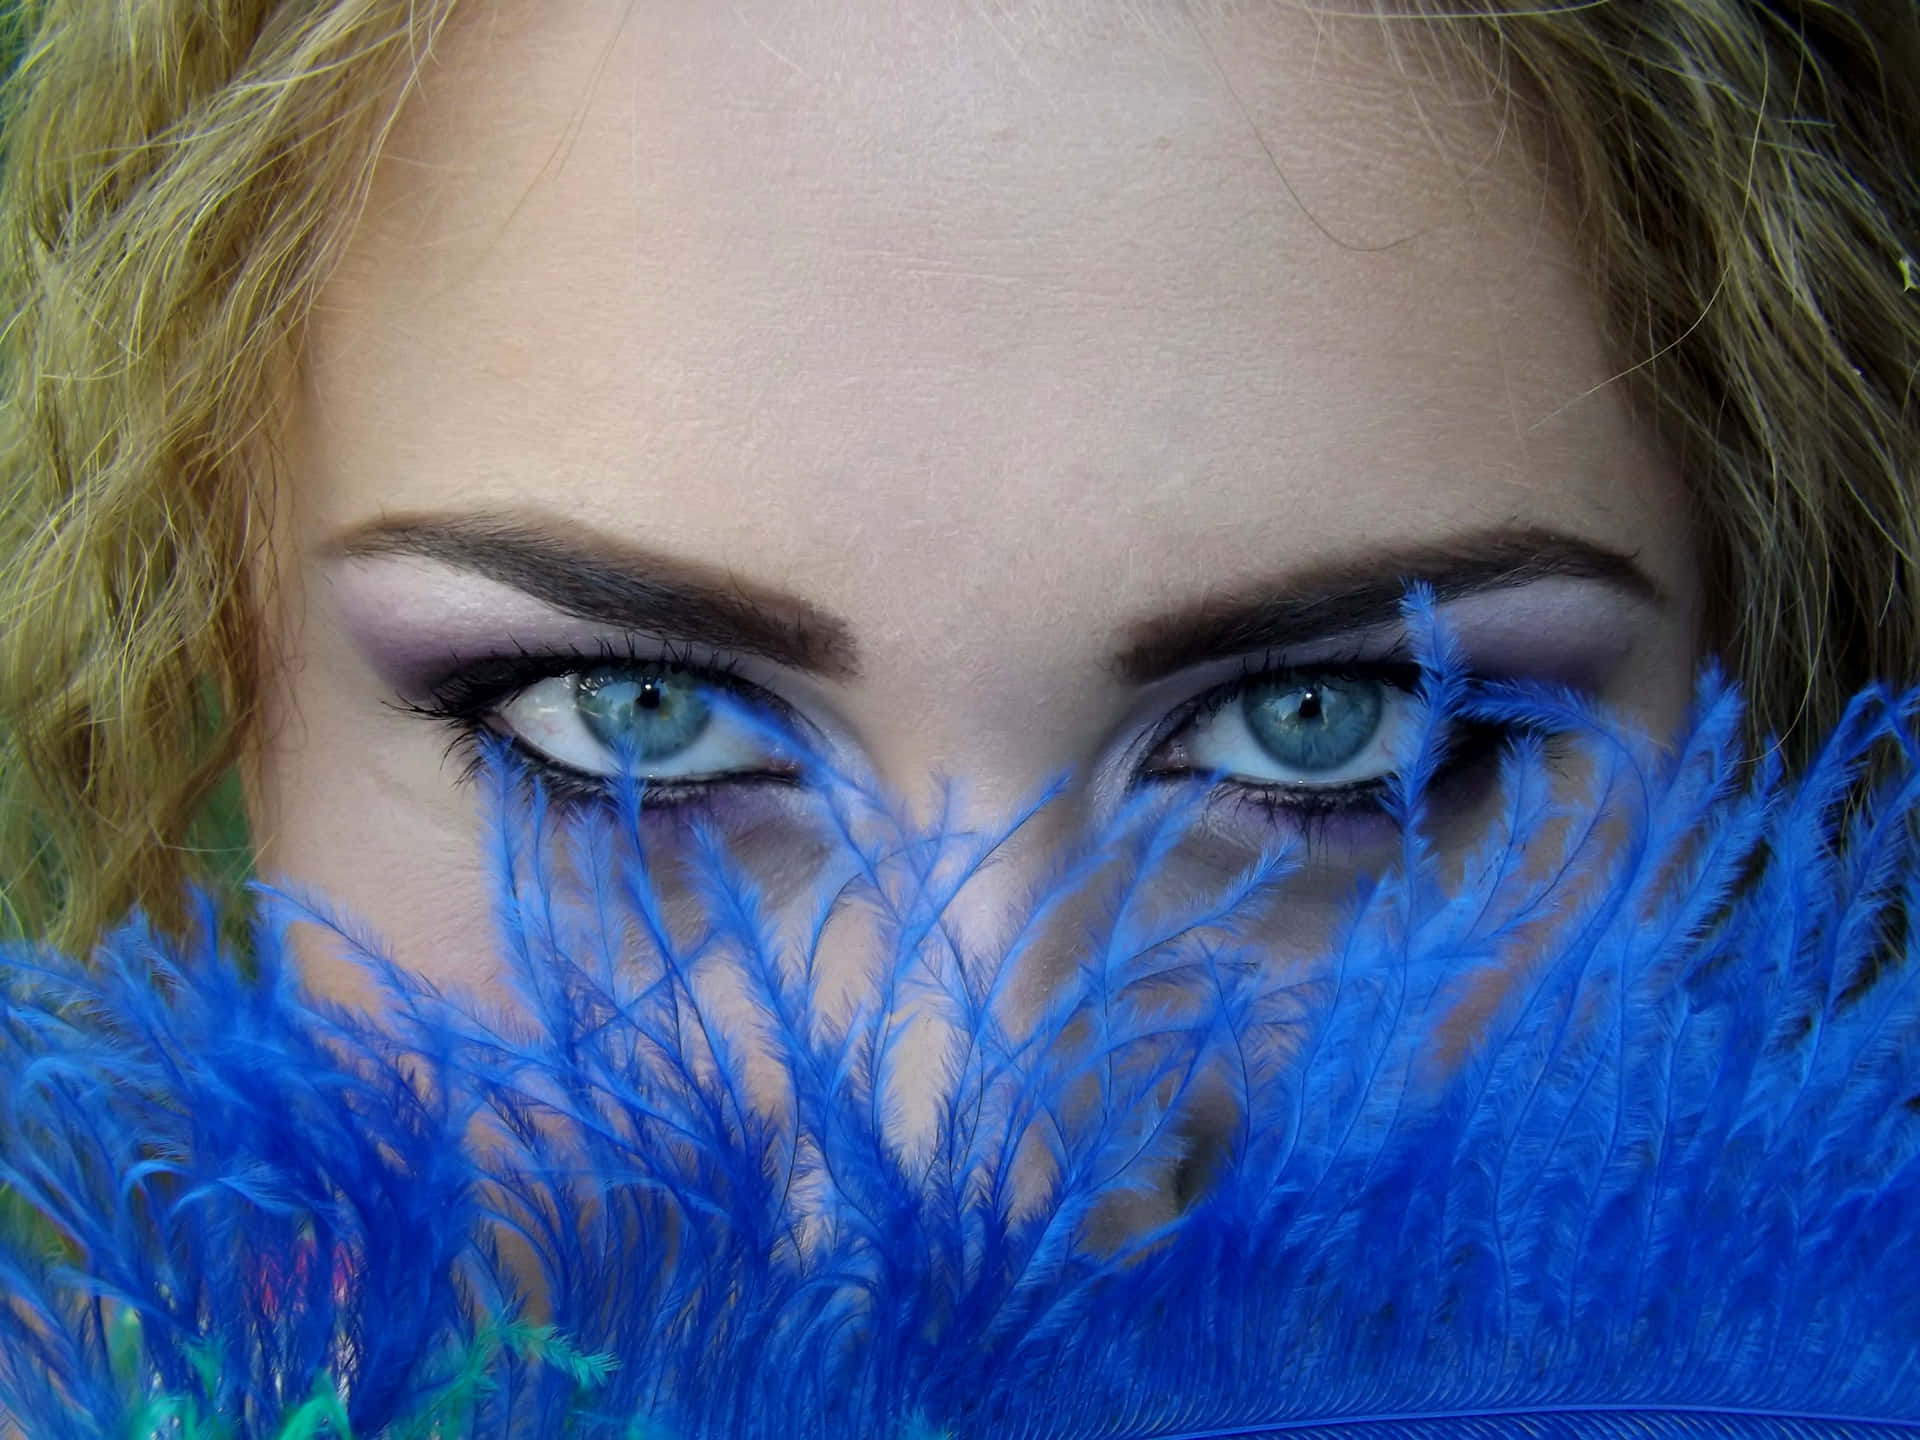 Mujercon Ojos Azules Detrás De Una Imagen De Pompones.